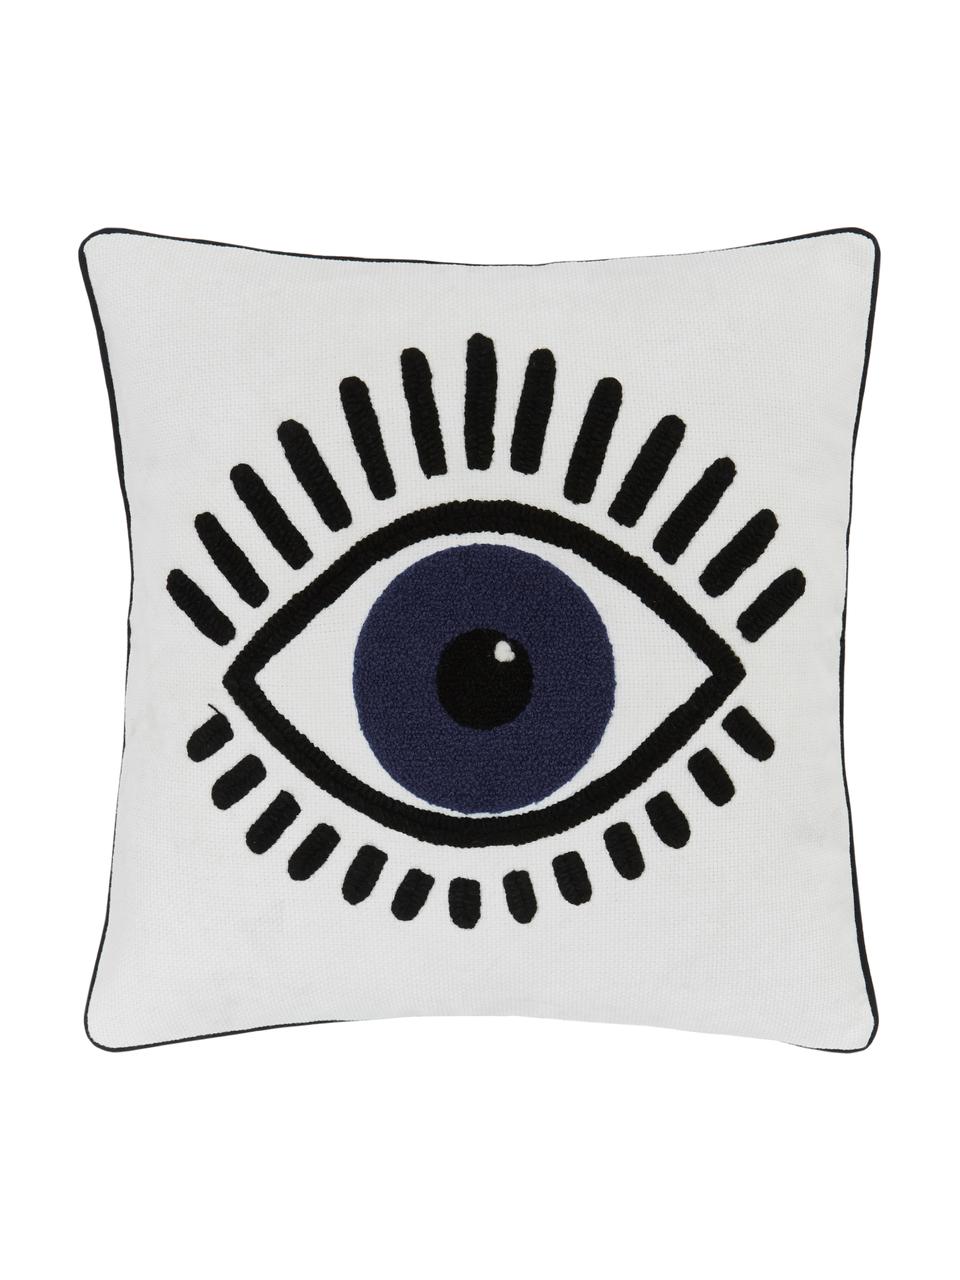 Kussenhoes Charms met oogmotief, 2 stuks, 100% katoen, Wit, zwart, blauw, 45 x 45 cm